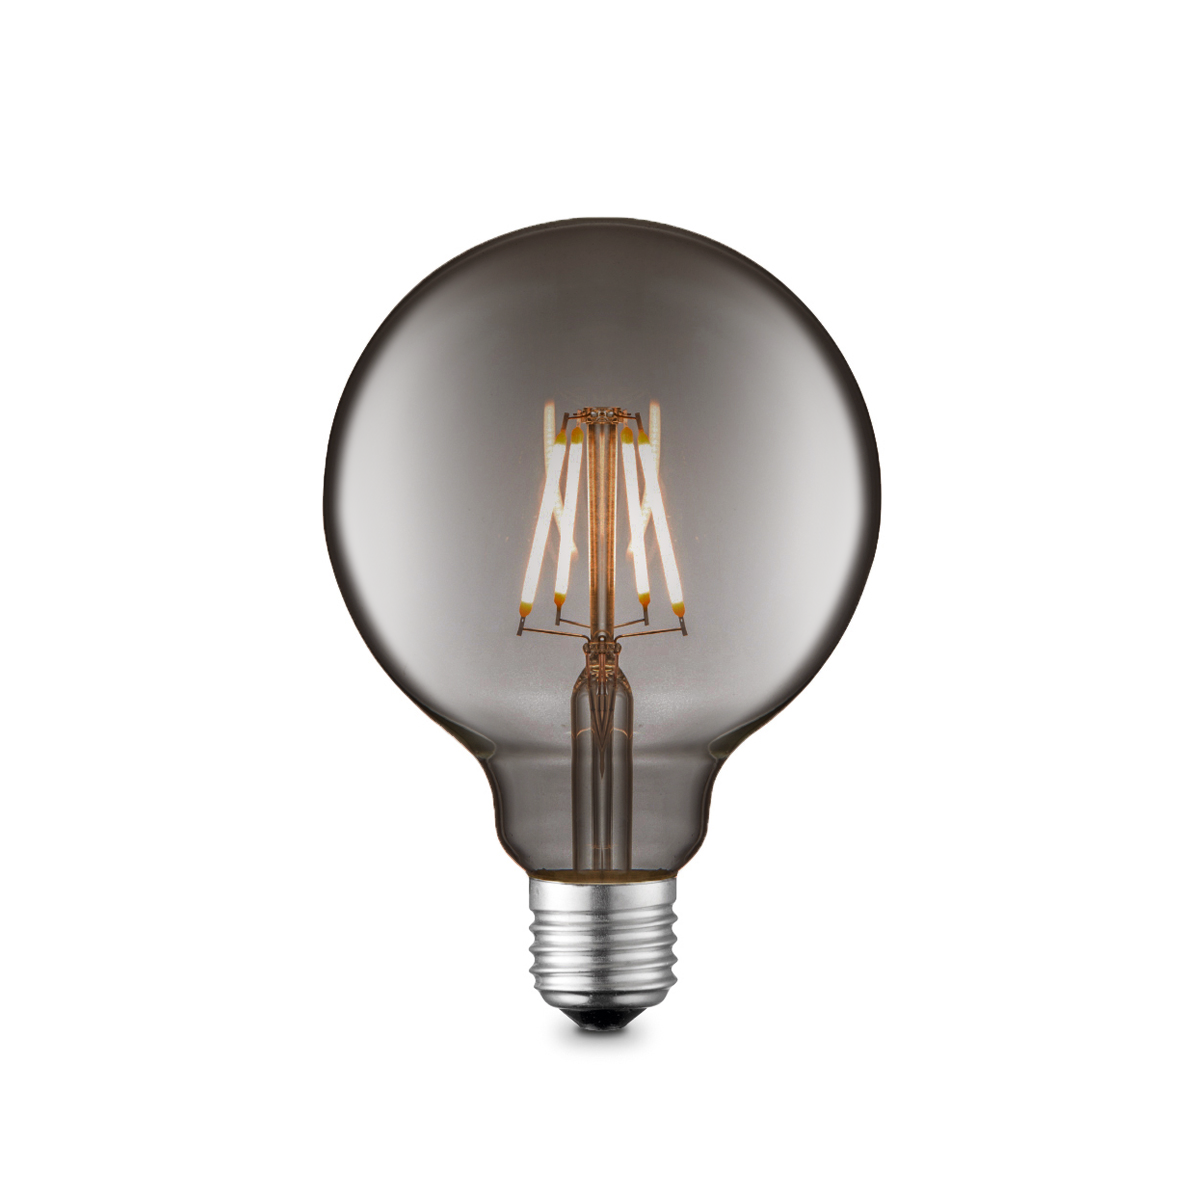 Tangla lighting - TLB-8004-02TM - LED Light Bulb Deco filament - G95 2W titanium - non dimmable - E27